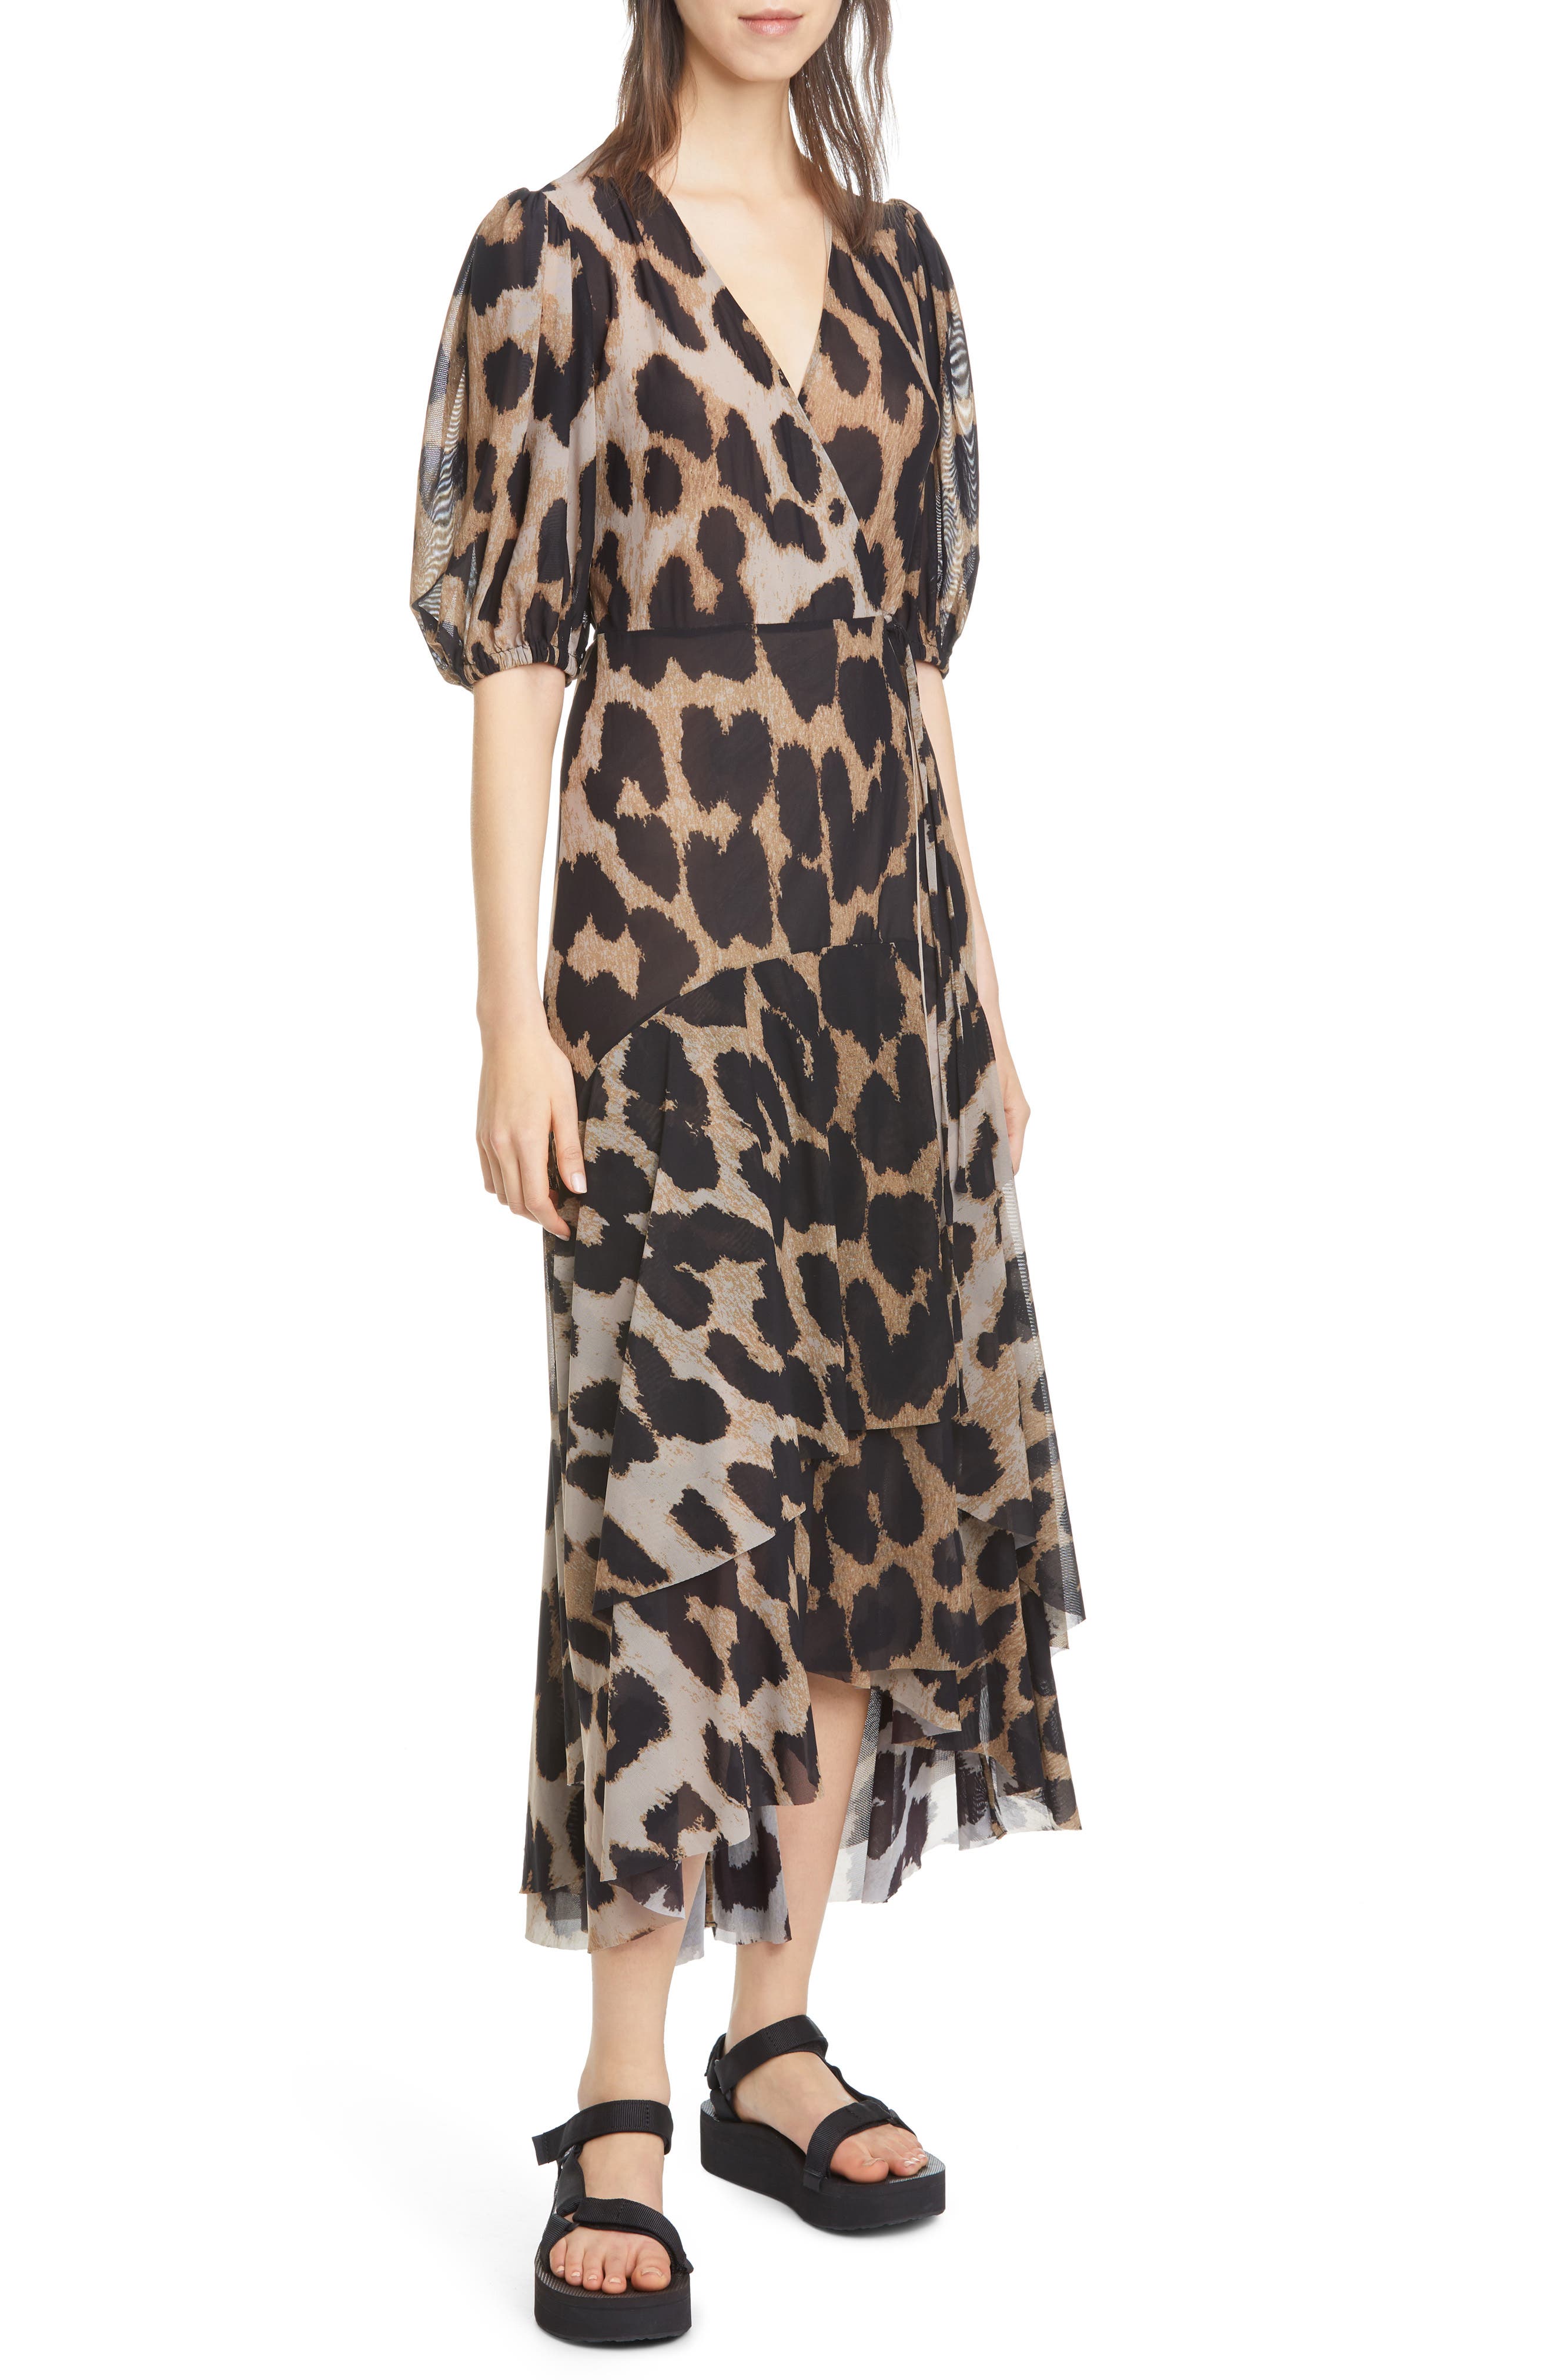 ganni mesh leopard dress